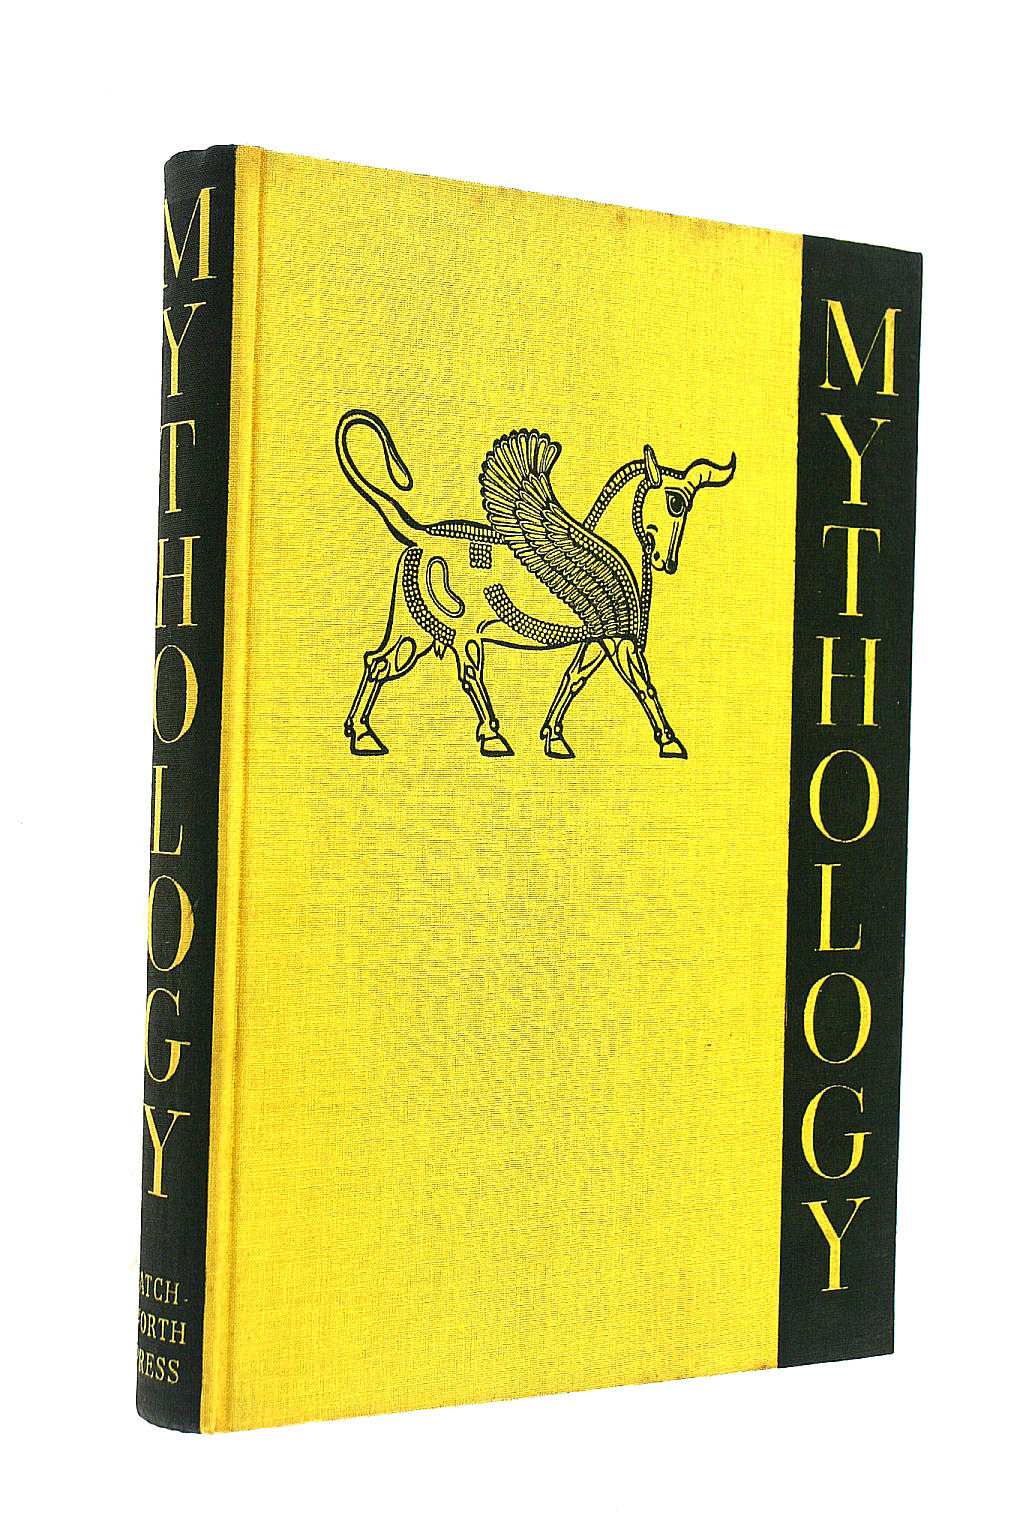 ROBERT GRAVES (INTRO) - Larousse encyclopedia of mythology